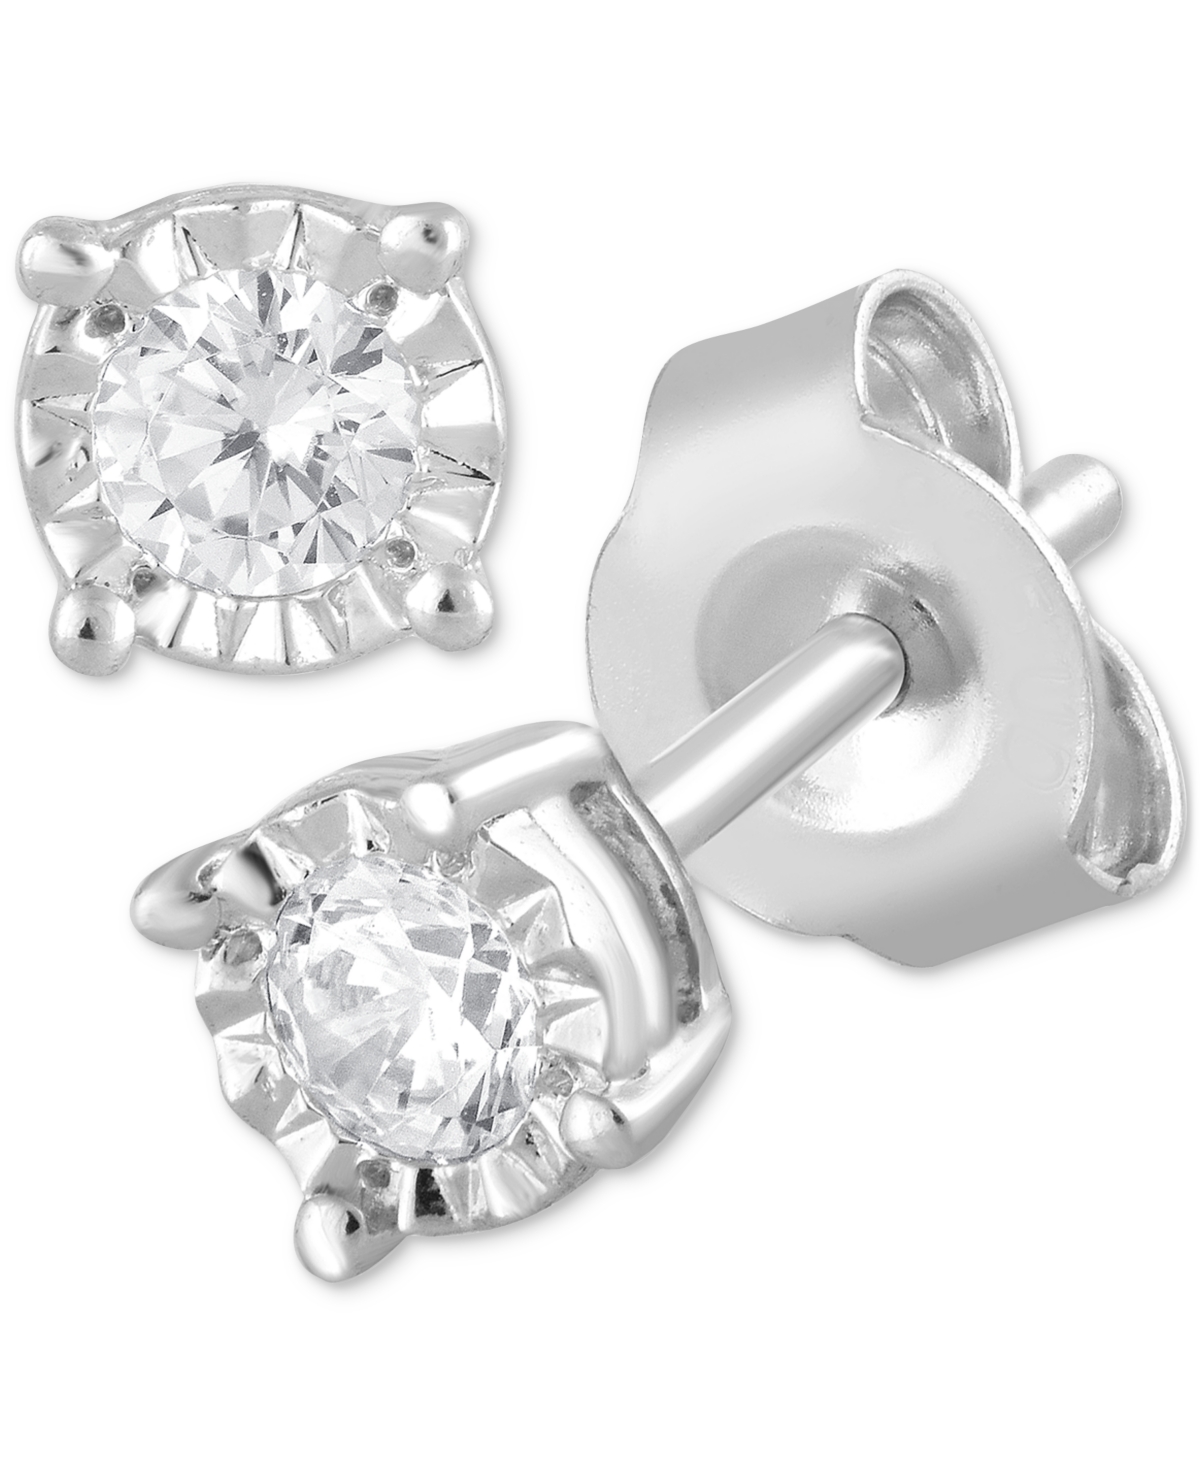 Lab Grown Diamond Stud Earrings (1/5 ct. t.w.) in Sterling Silver - Sterling Silver